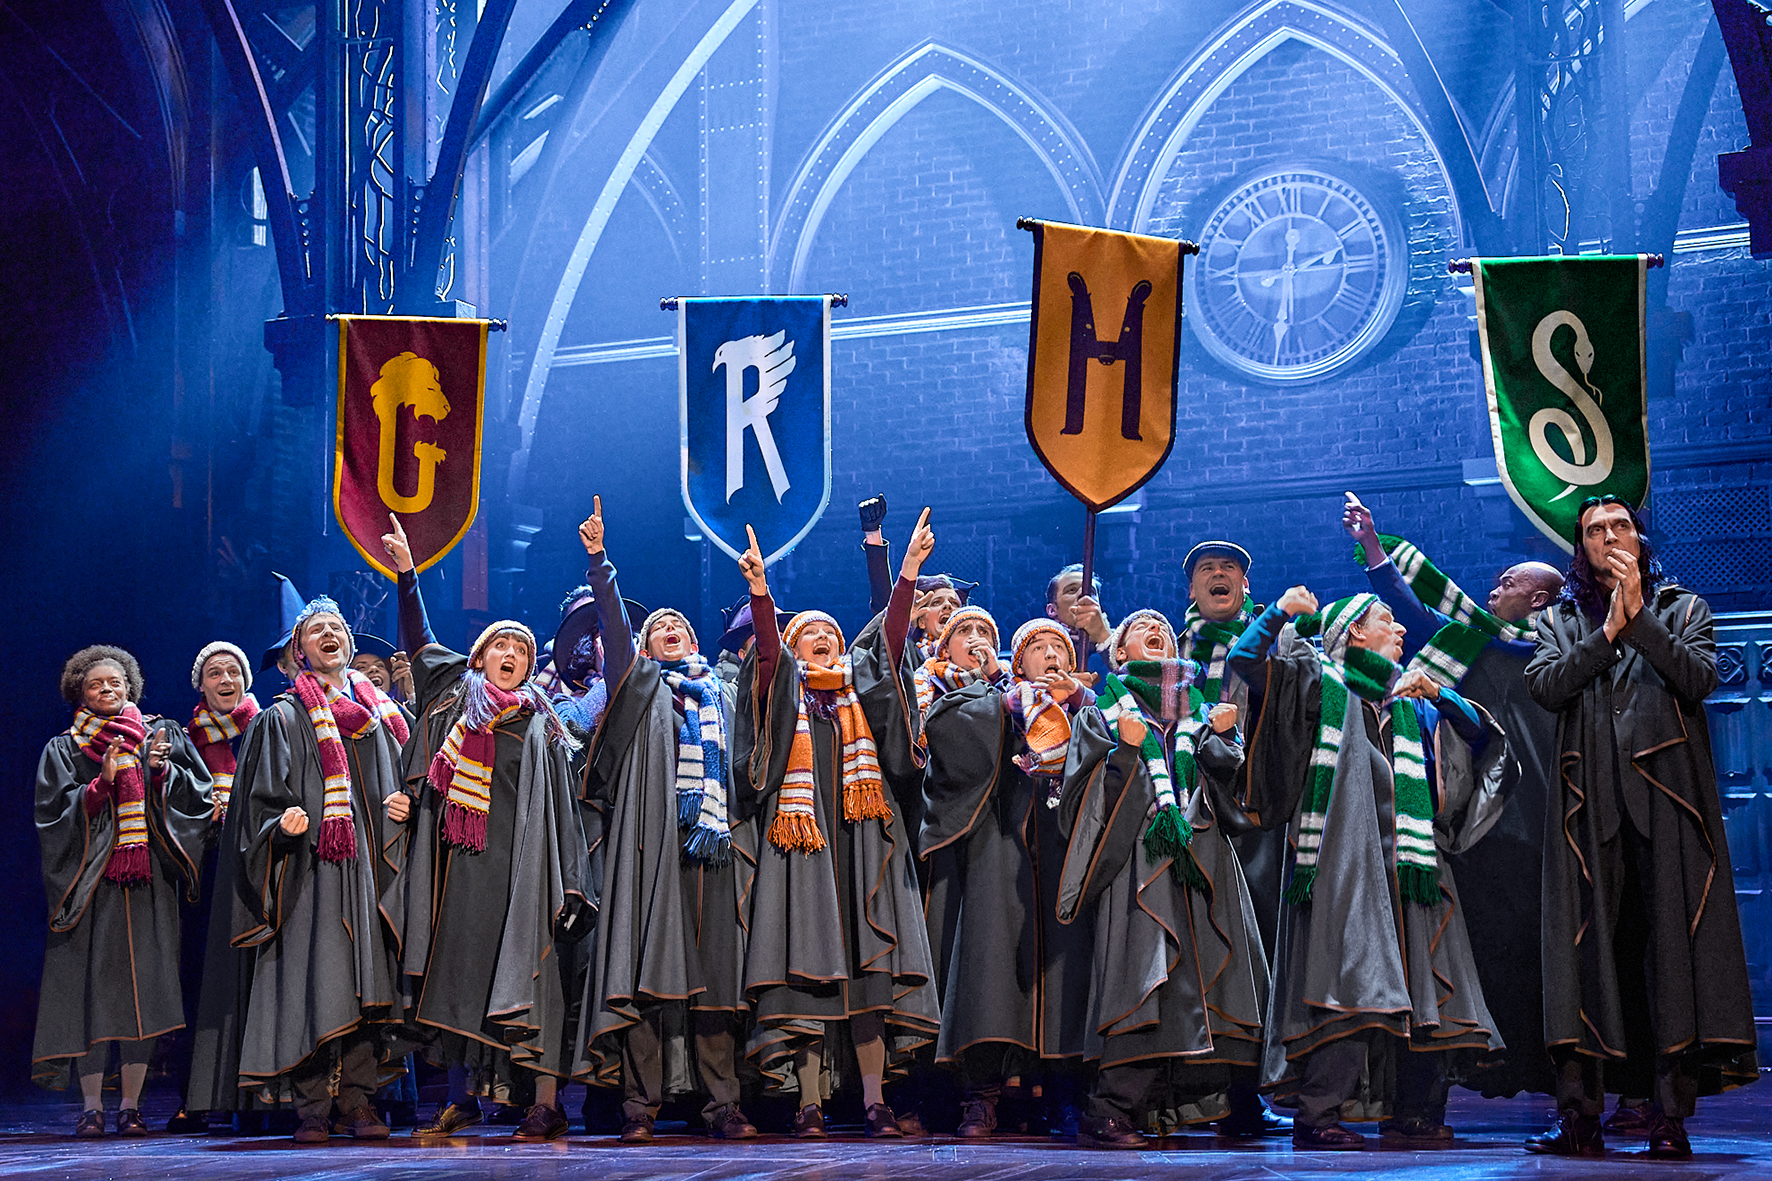 Theaterstück in Hamburg  „Harry Potter und das verwunschene Kind" - Trimagisches Turnier  